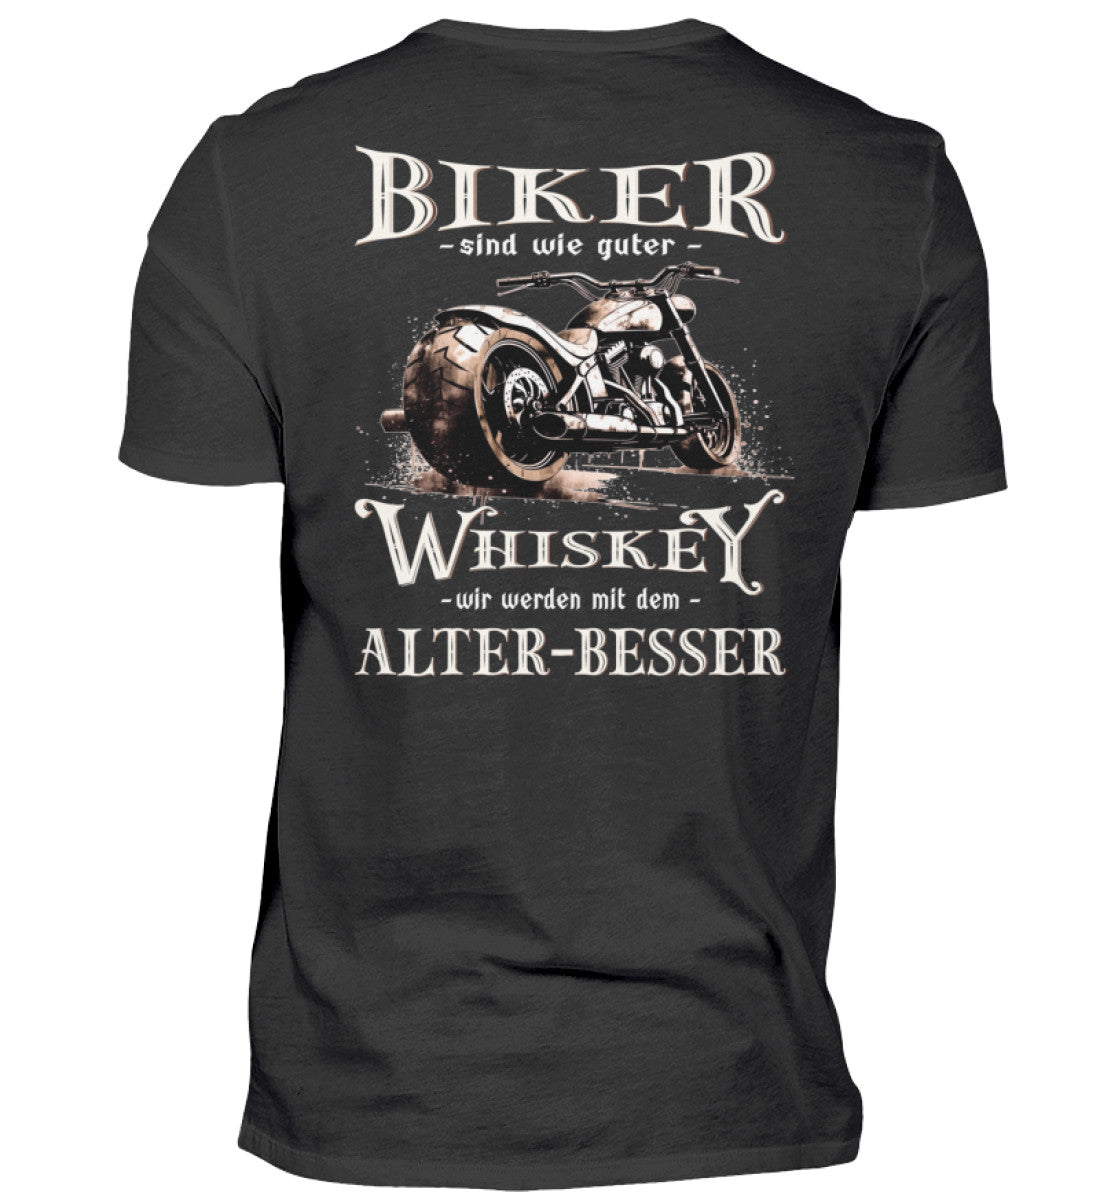 Biker T-Shirt mit einem vintage Aufdruck, Biker sind wie gute Whiskey - wir werden mit dem Alter besser mit Back Print in schwarz. 